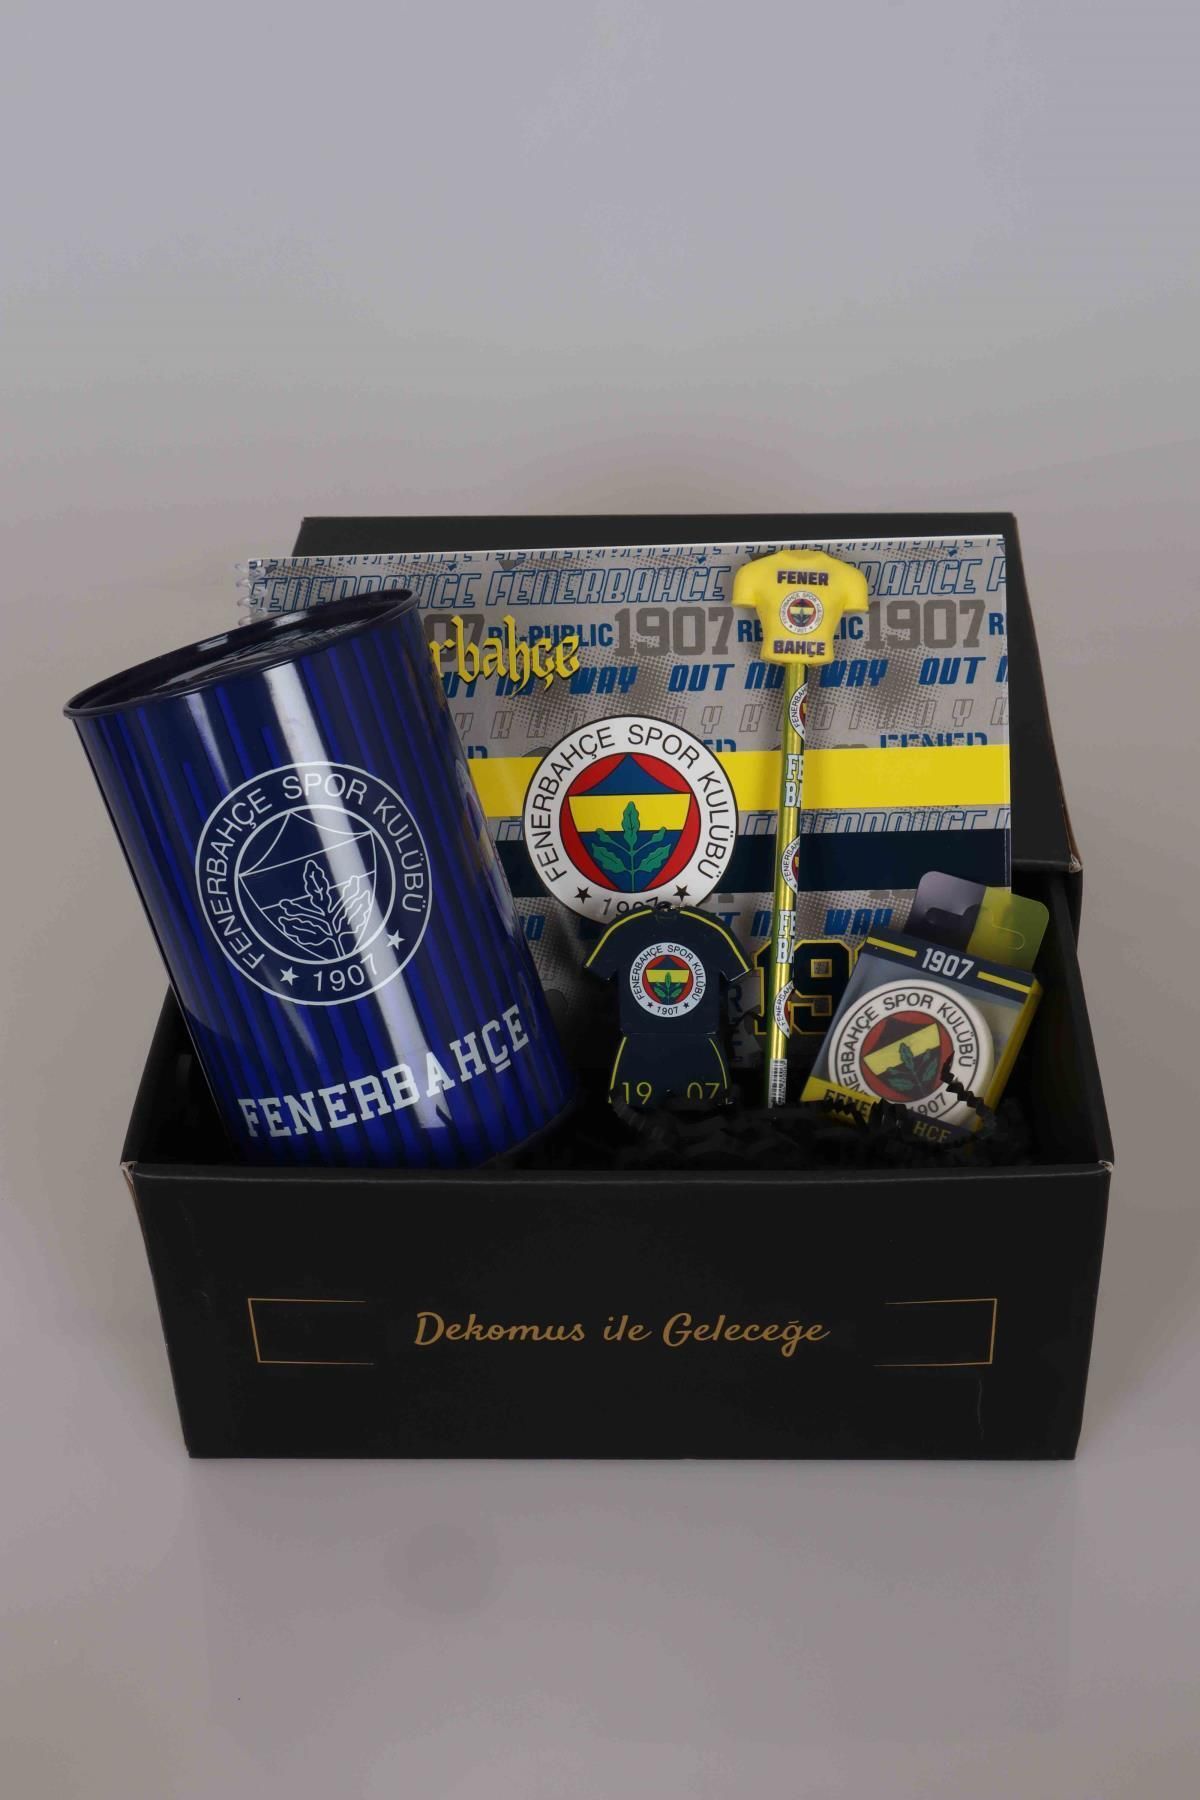 Fenerbahçe Dekomus Gıft Box Özel Kutulu Lisanslı Kırtasiye Seti Büyük Boy Kumbara, Resim Defteri